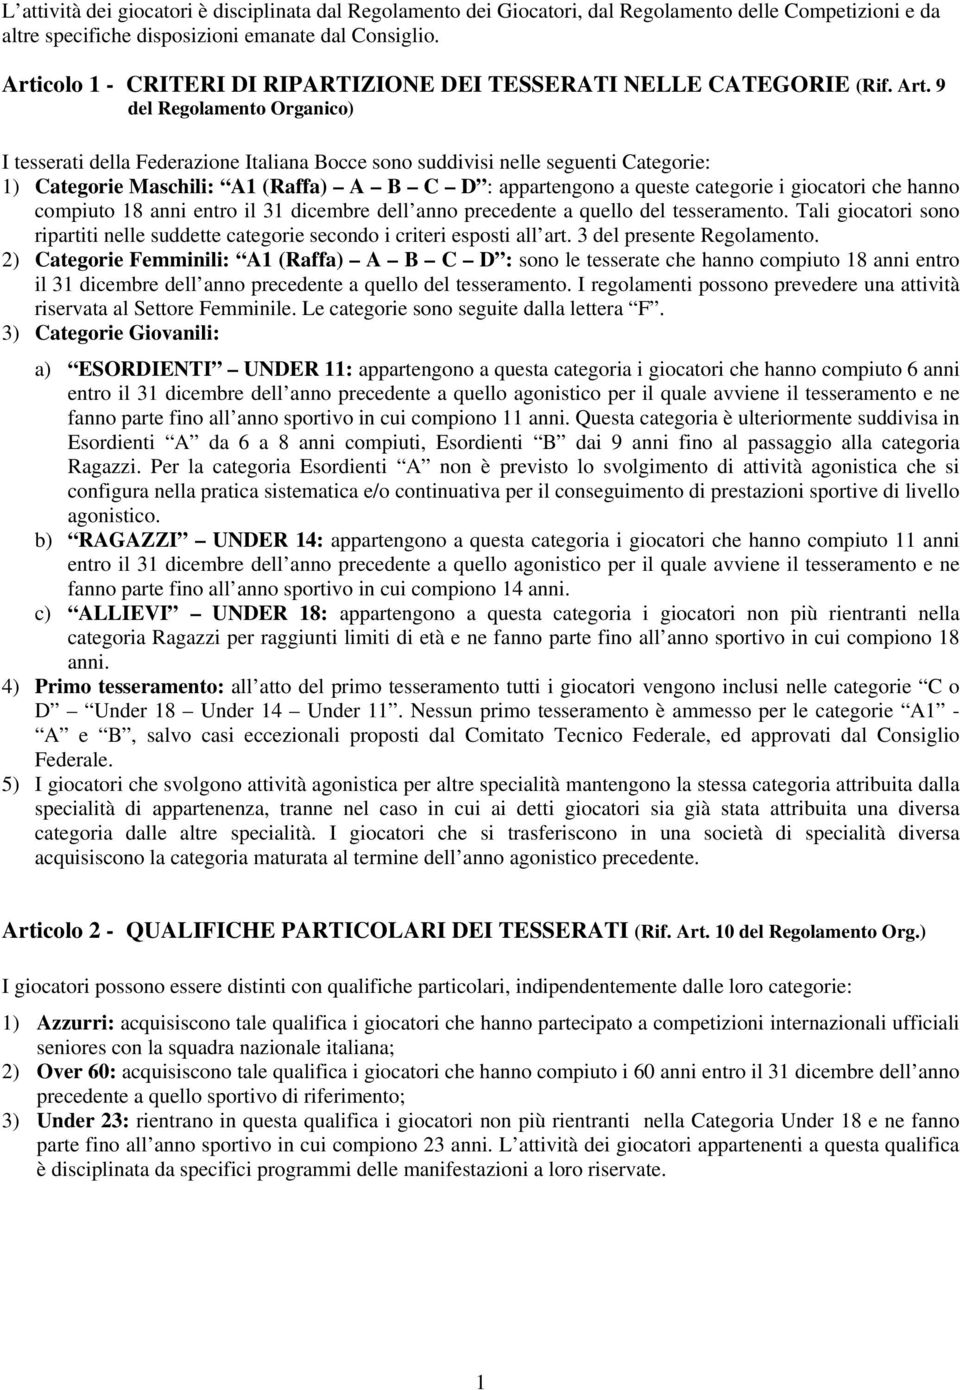 9 del Regolamento Organico) I tesserati della Federazione Italiana Bocce sono suddivisi nelle seguenti Categorie: 1) Categorie Maschili: A1 (Raffa) A B C D : appartengono a queste categorie i